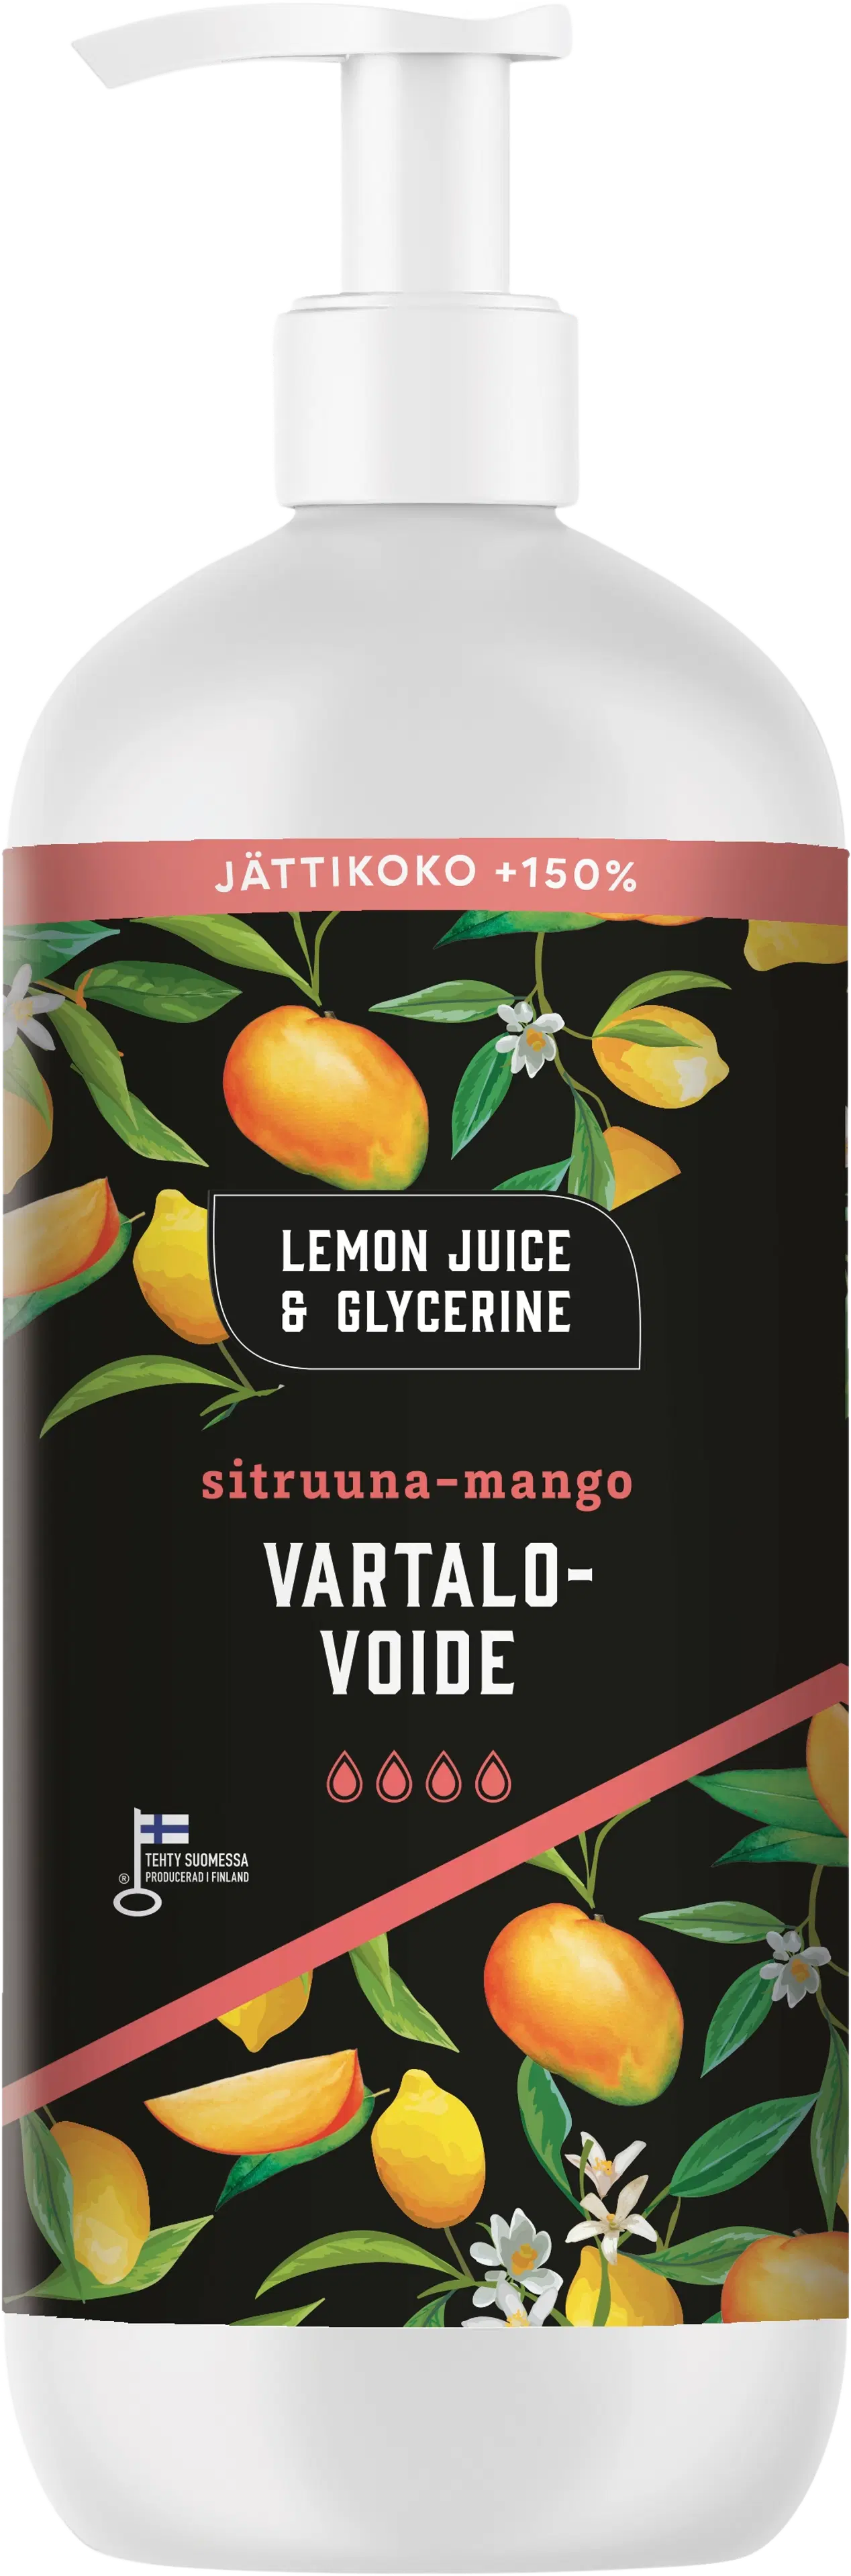 Lemon Juice & Glycerine Vartalovoide Sitruuna-Mango 500ml